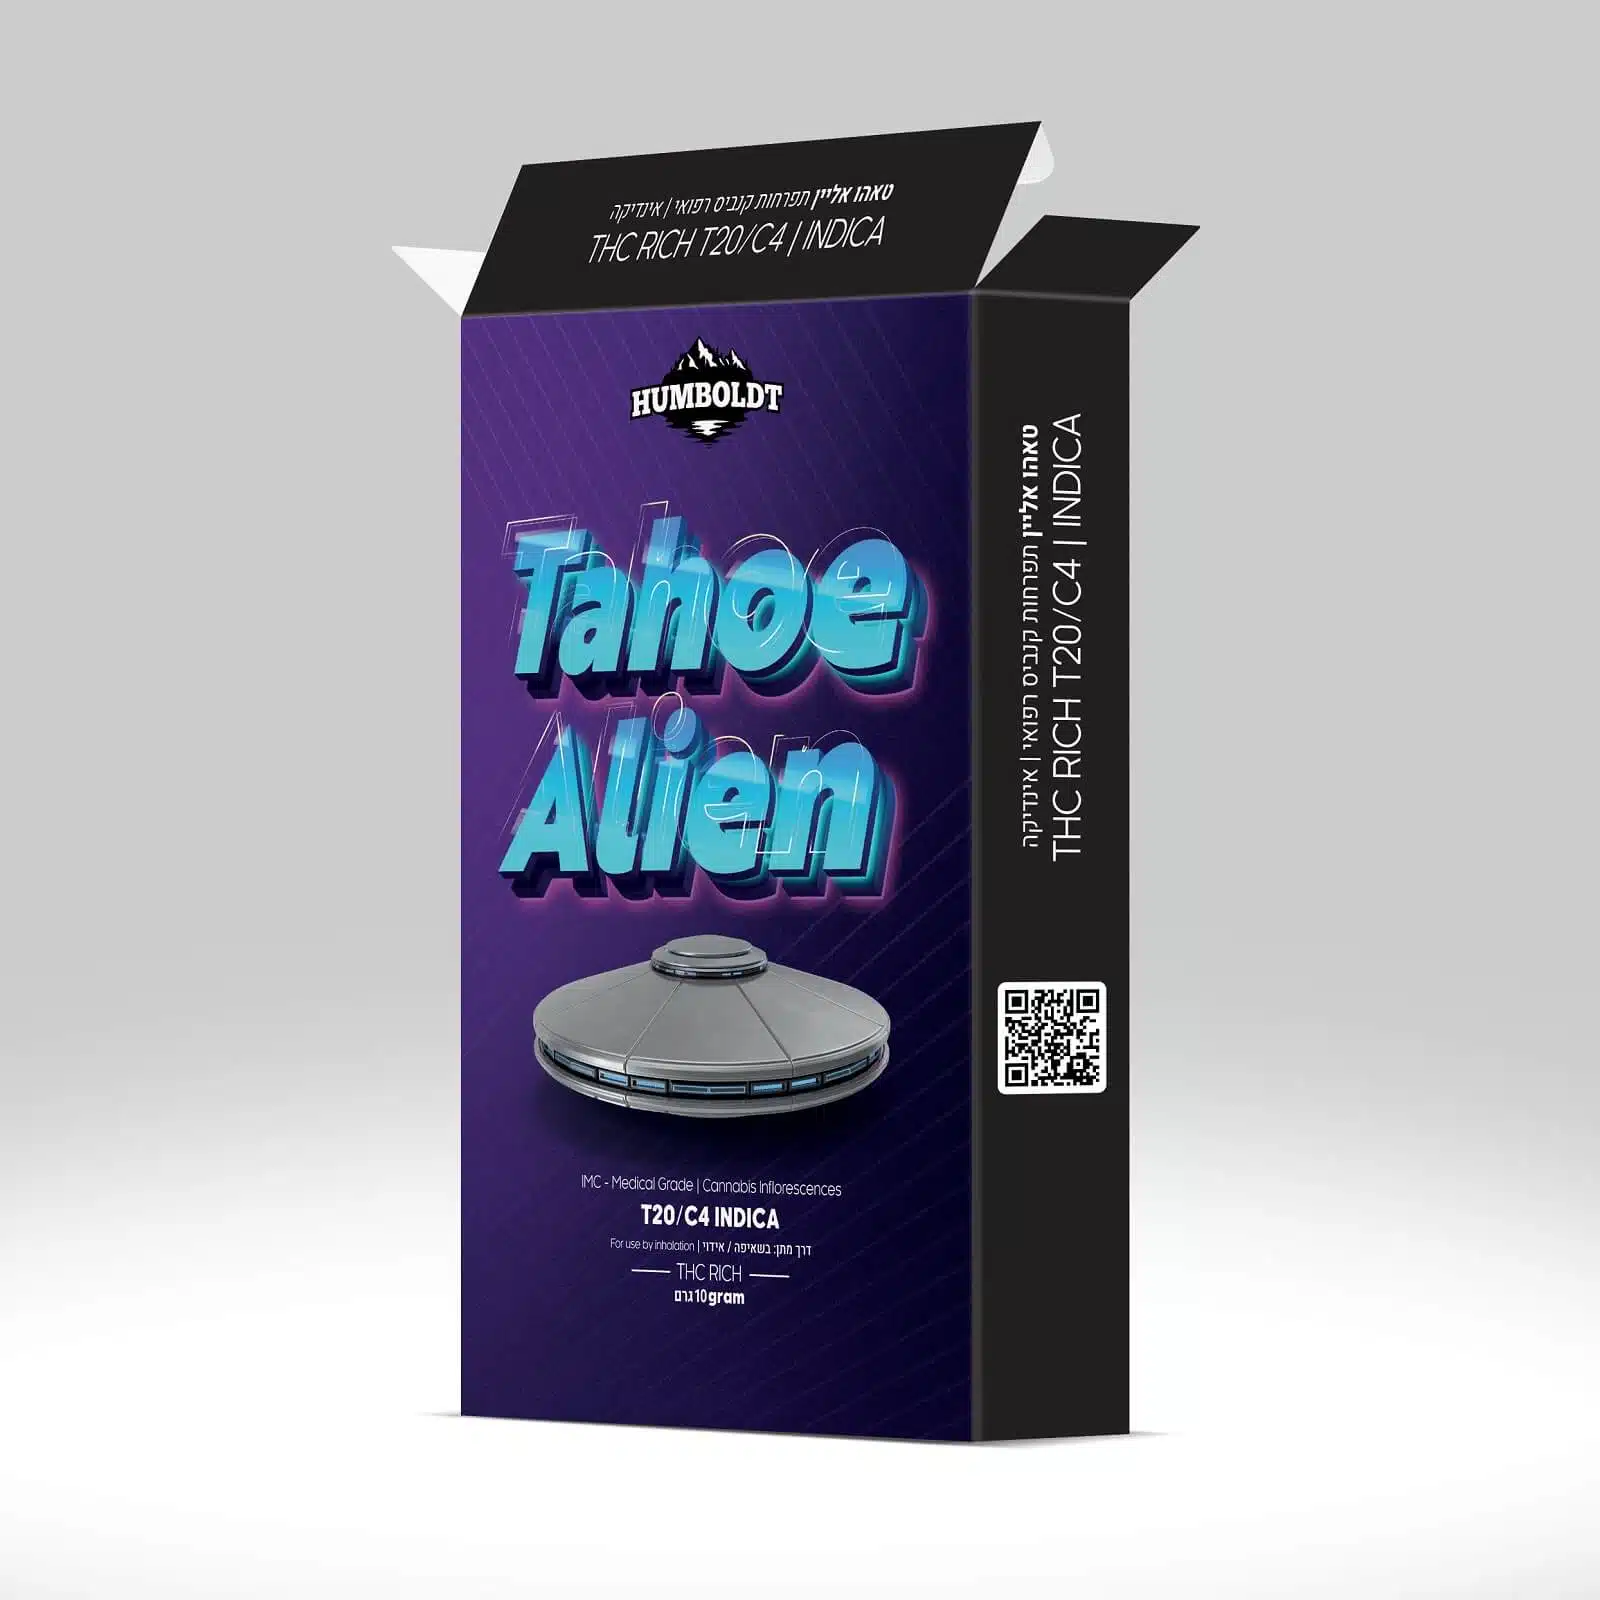 אריזת טאהו אליין (Tahoe Alien) - אינדיקה T20/C4